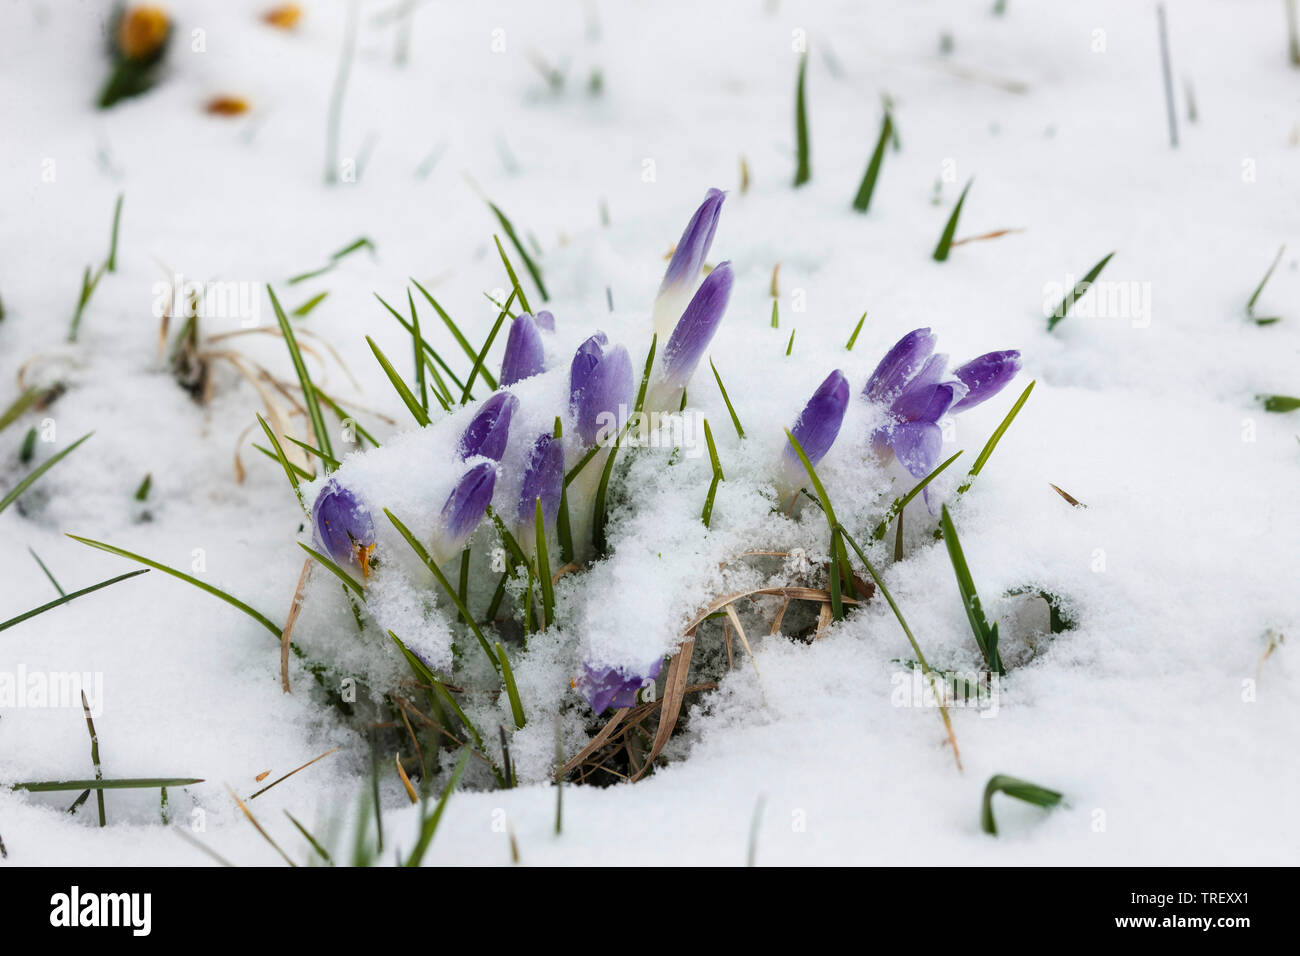 Crocus (Crocus vernus), blue flowers in snow. Germany Stock Photo